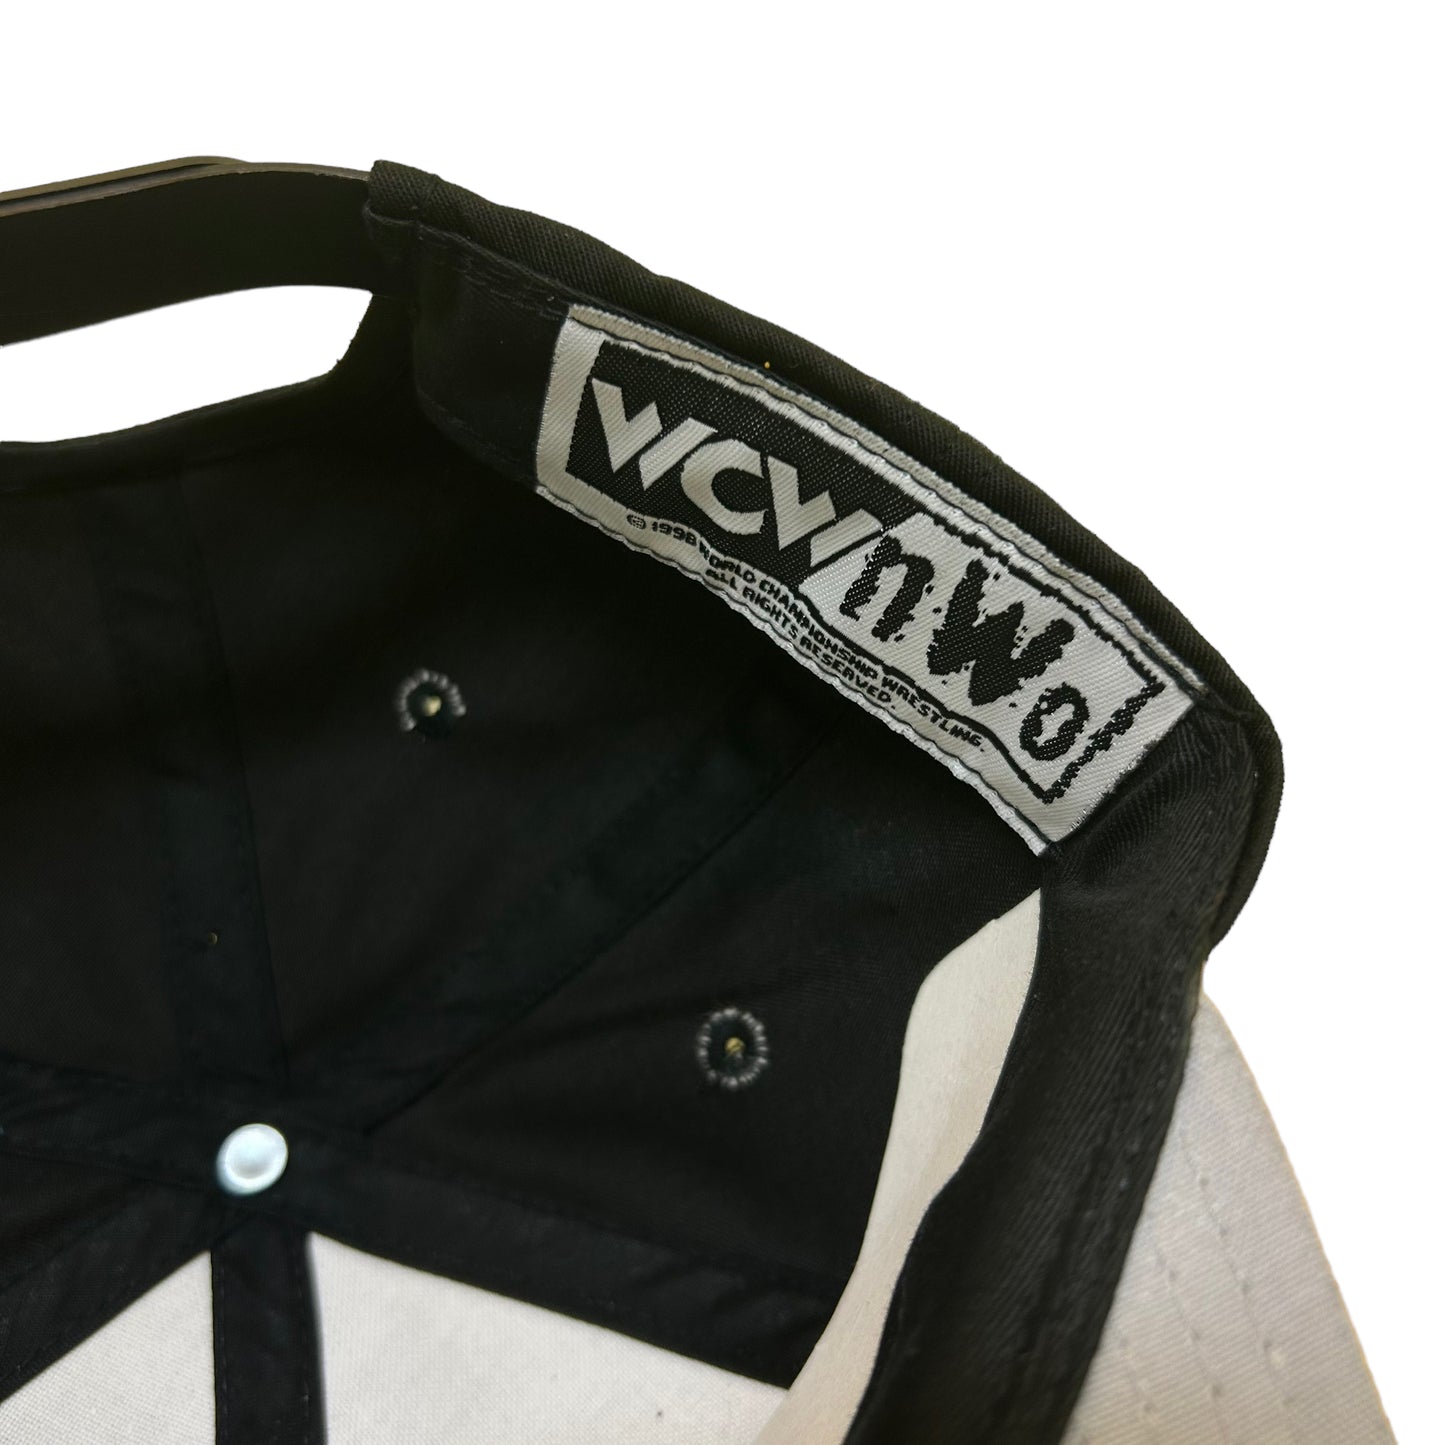 NWOT Vintage 1990s WCW/NWO Wrestling Goldberg Embroidered Black Snapback Hat